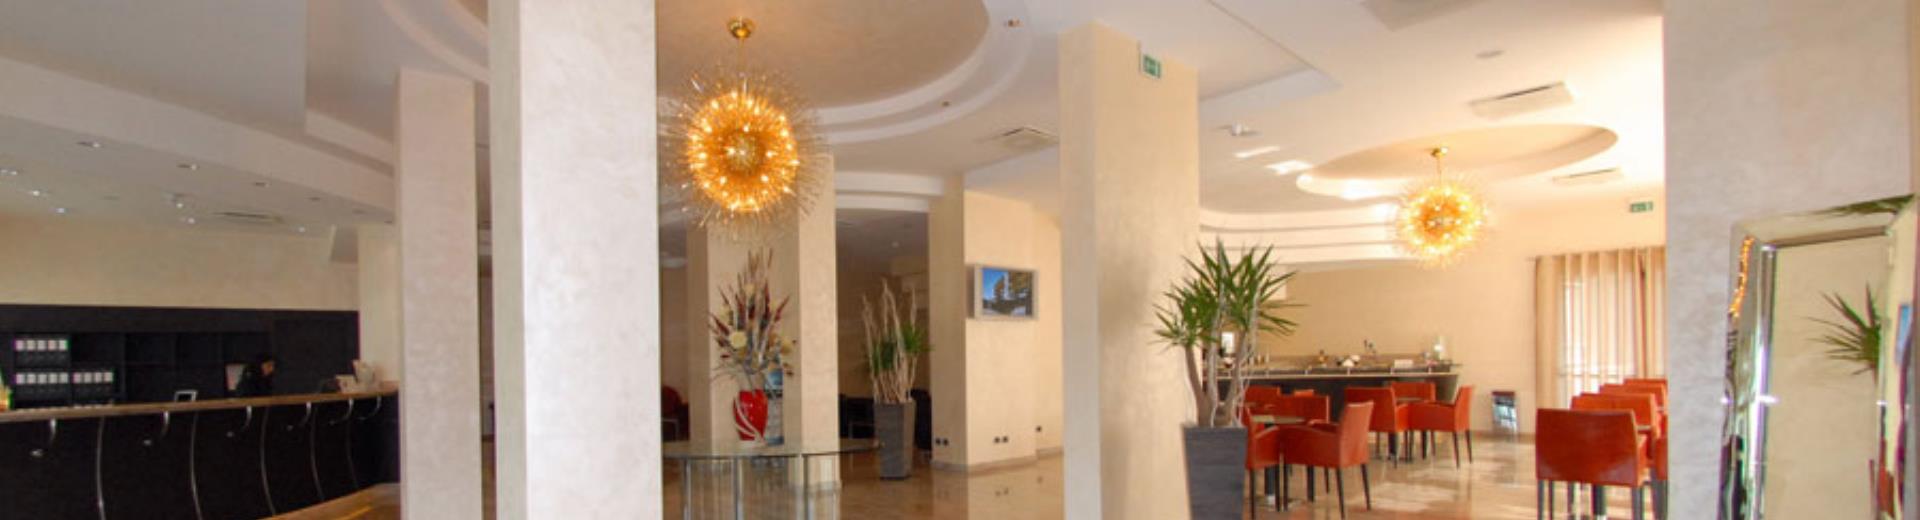 Al Hotel San Giorgio potrai trovare 66 camere dotate di ogni confort.